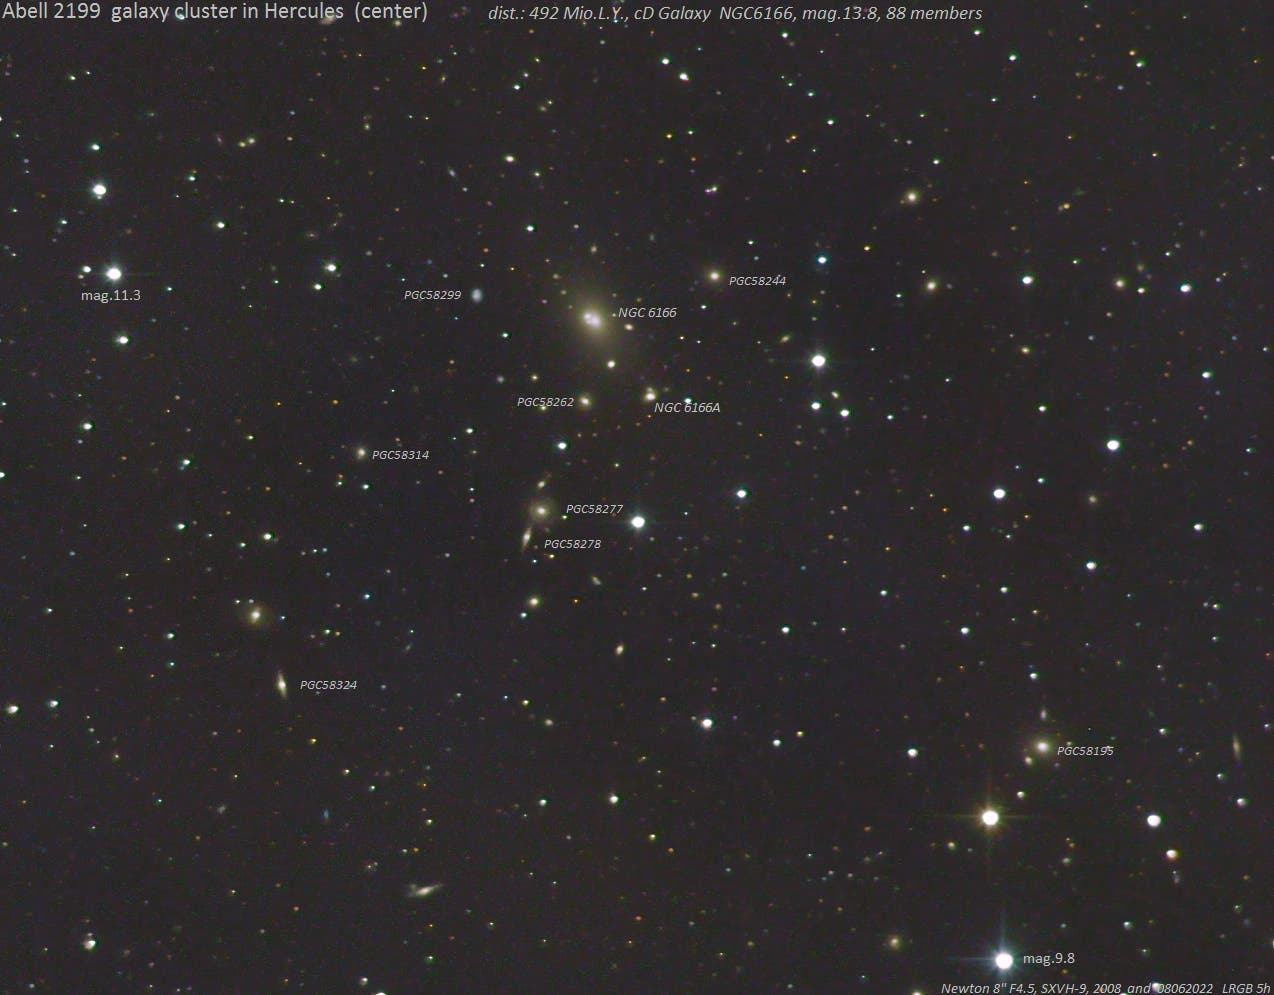 Abell 2199 - Galaxienhaufen im Sternbild Herkules